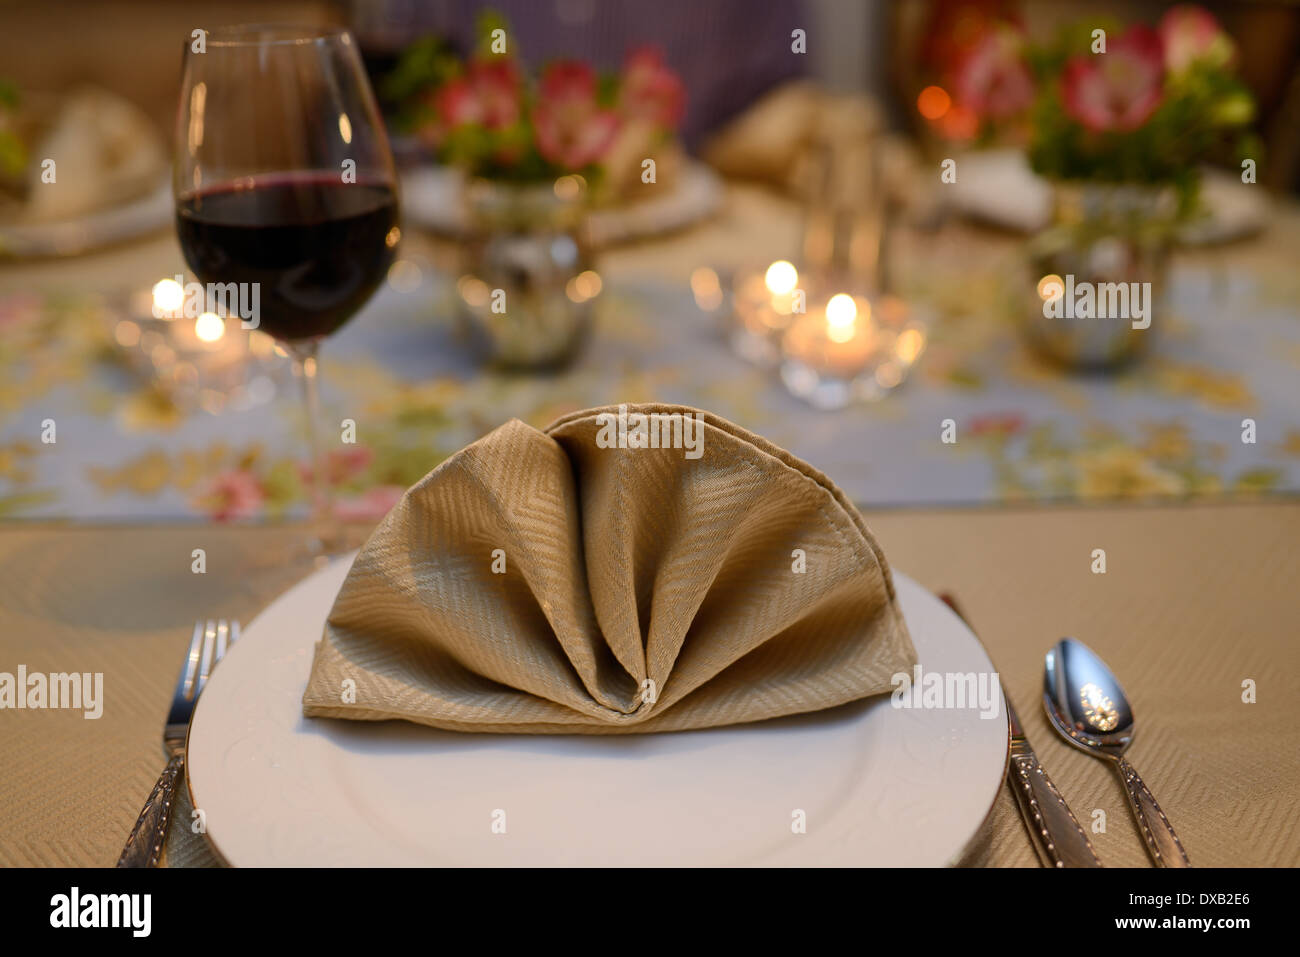 Wohn / Raum-Tischdekoration für eine Dinner-Party mit Serviette und Rotwein Stockfoto